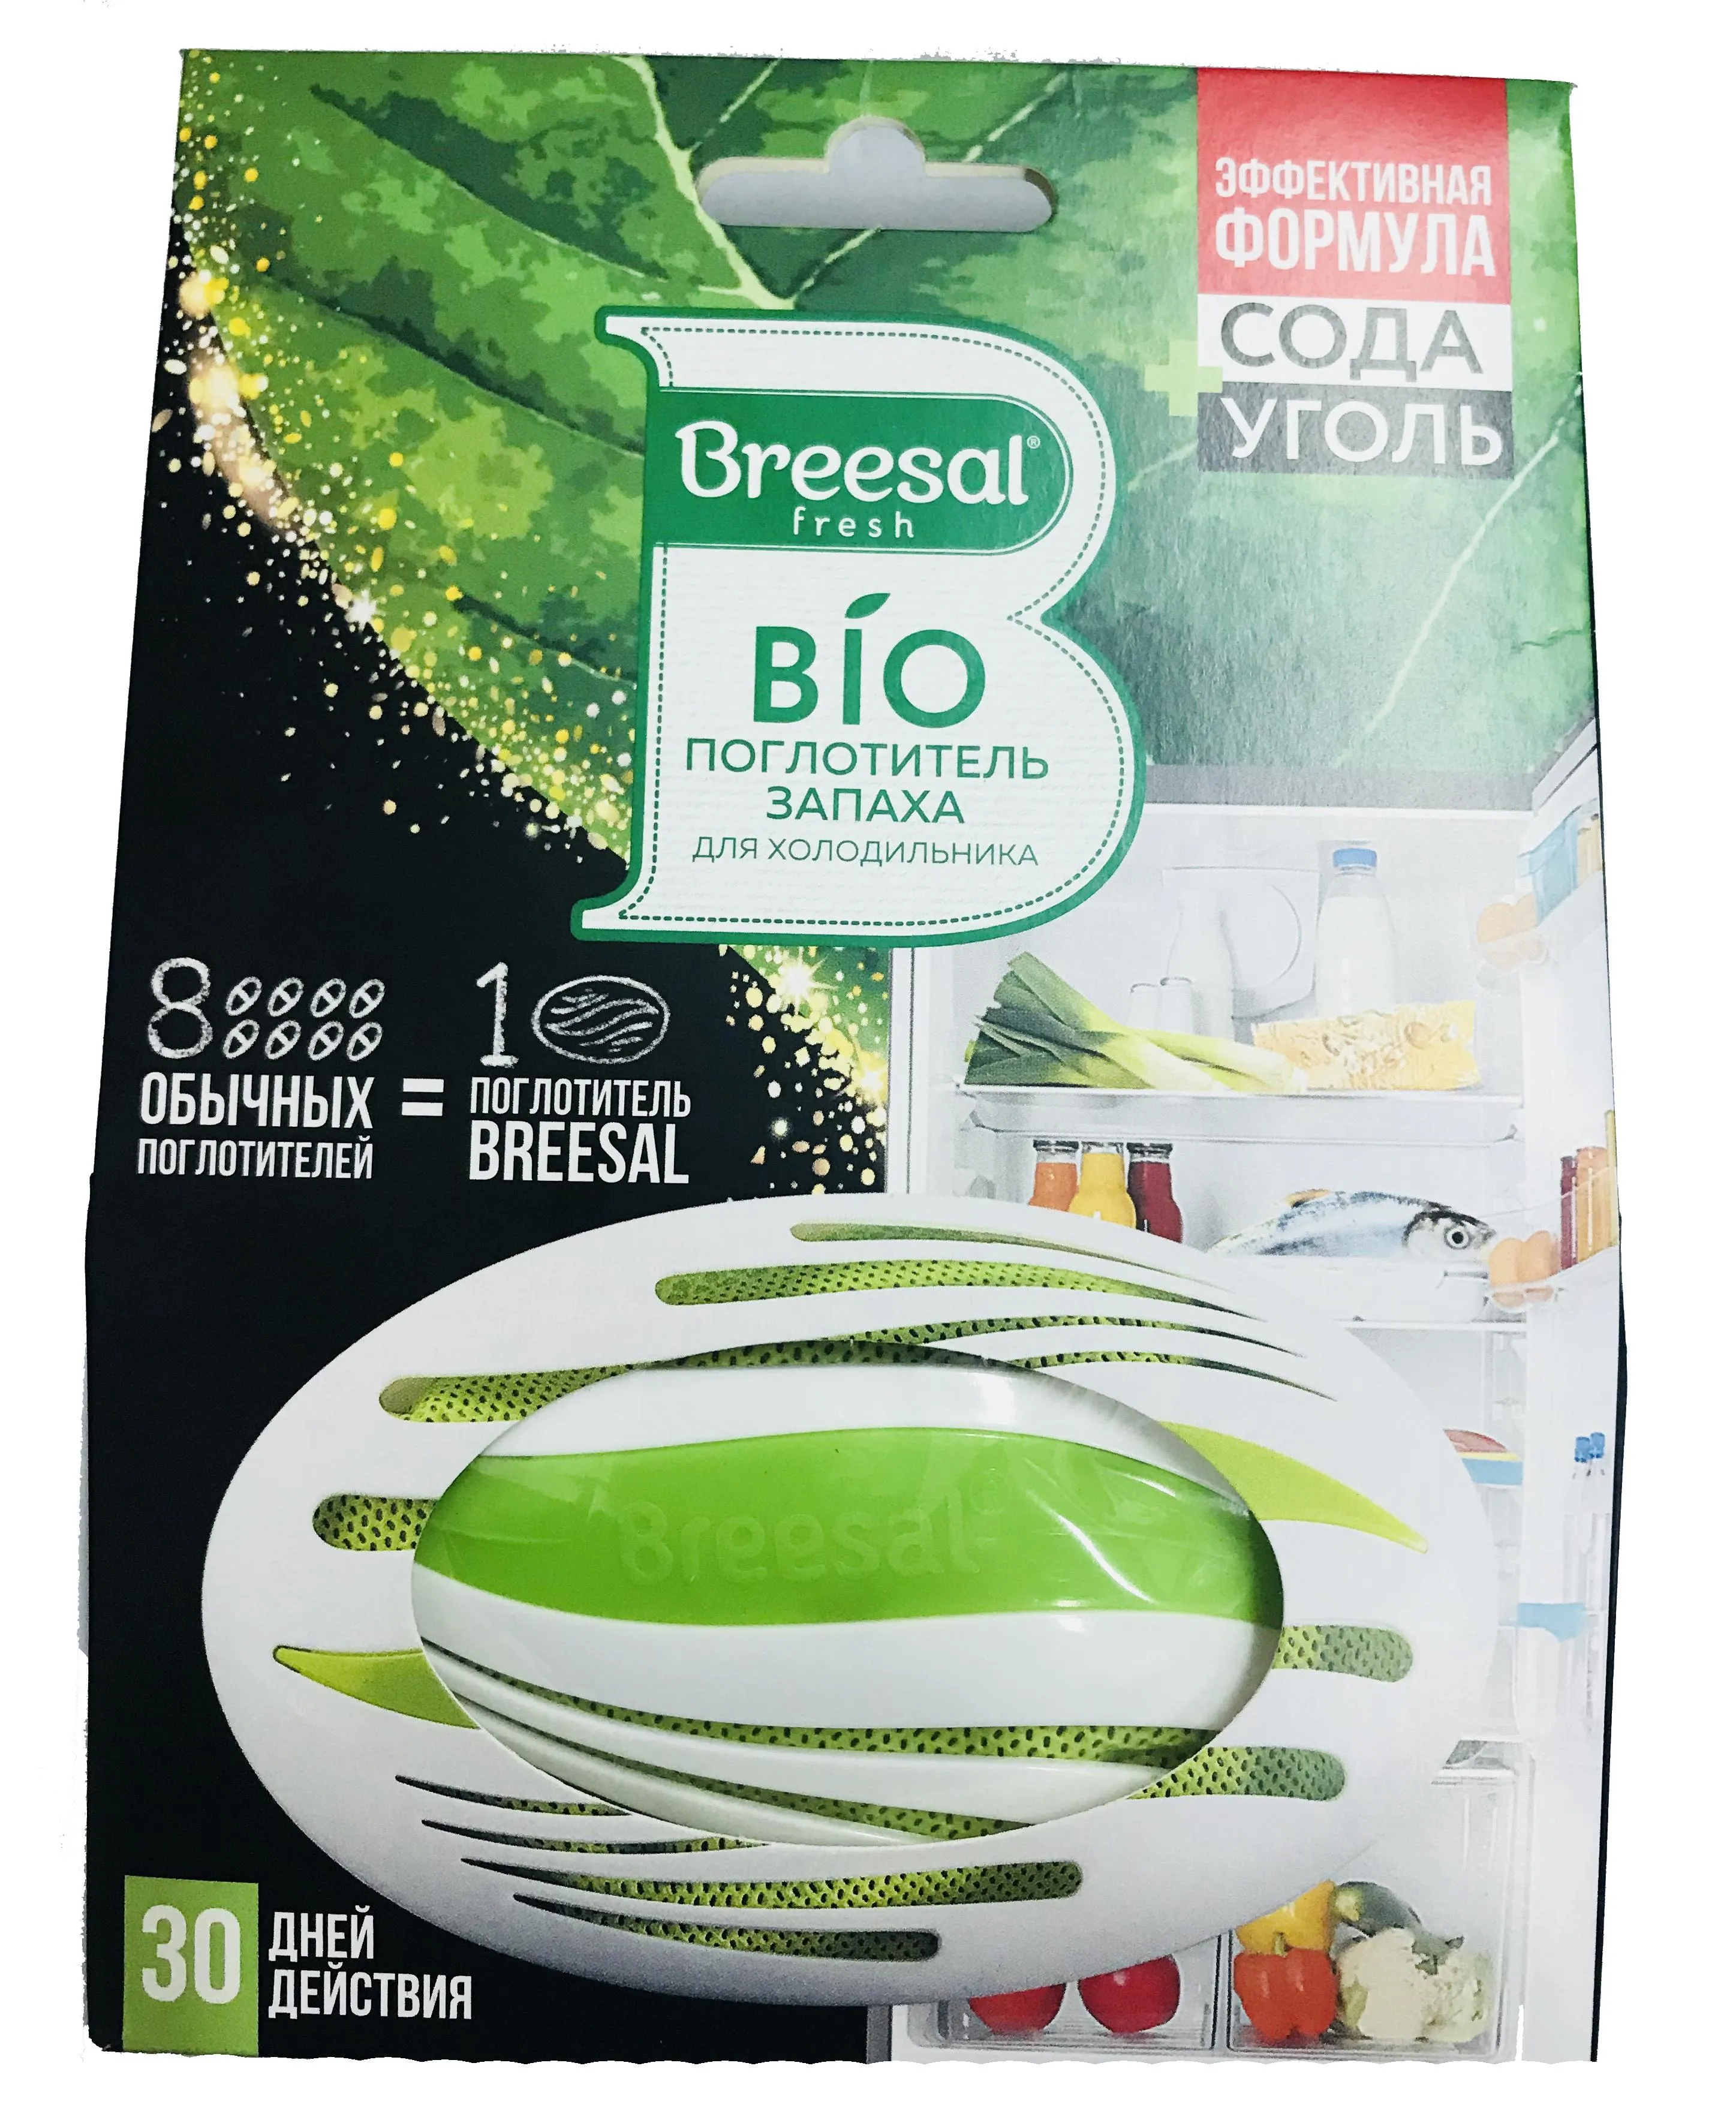 Breesal Био-поглотитель запаха для холодильника  80 гр